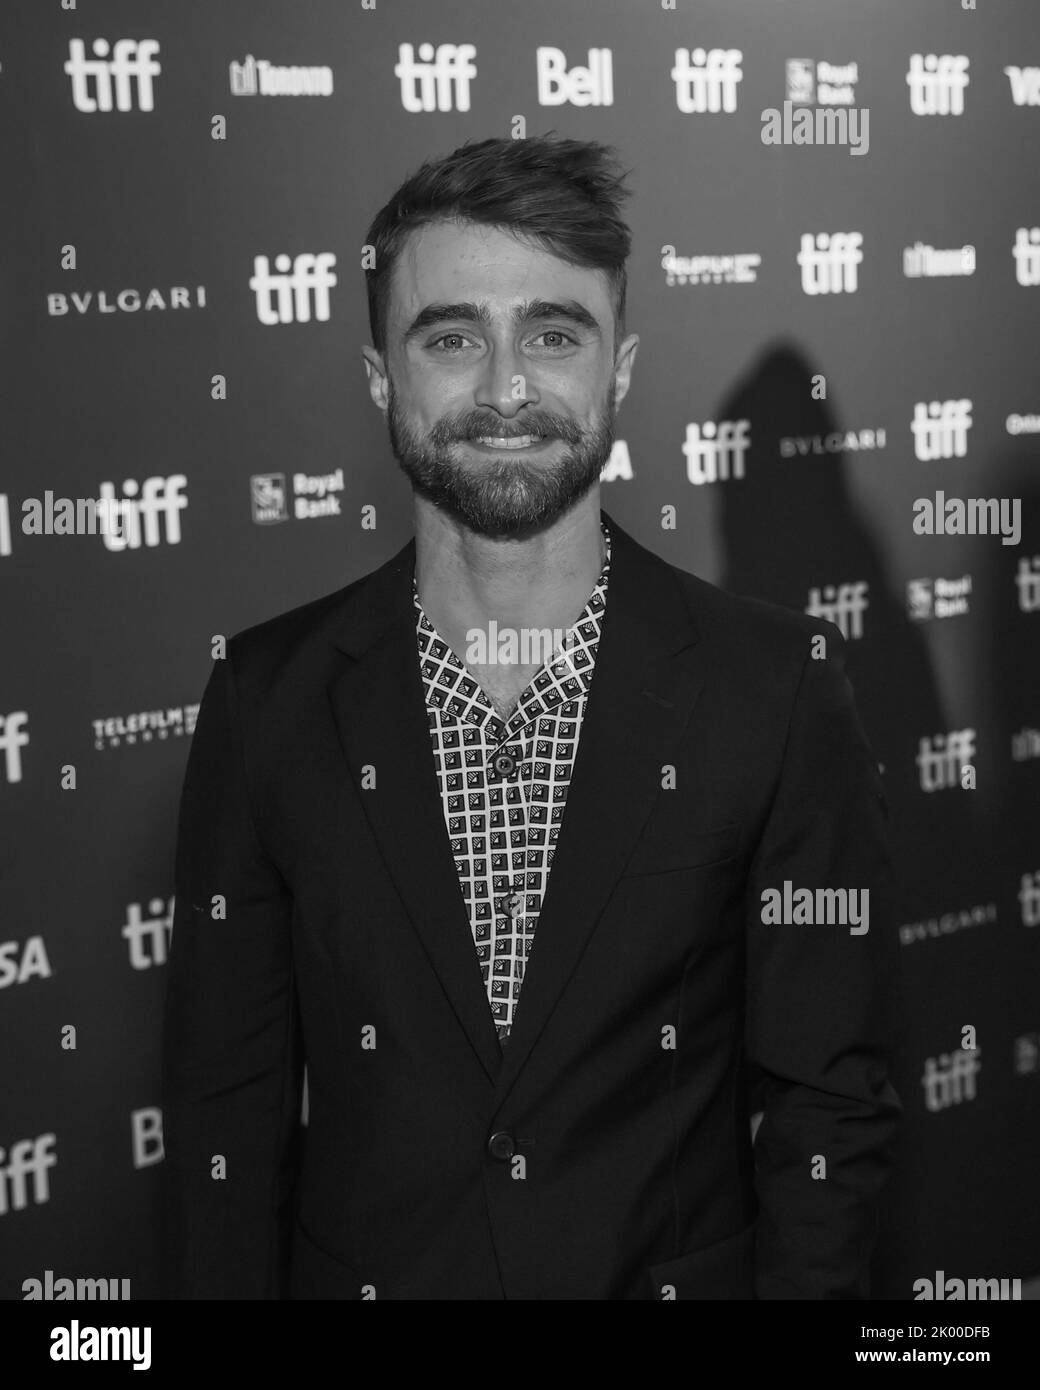 Daniel Radcliffe partecipa all'evento Red Carpet del Toronto International Film Festival per il film "Weird: The al Yankovic Story" al Royal Alexandra Theatre di Toronto. Foto Stock